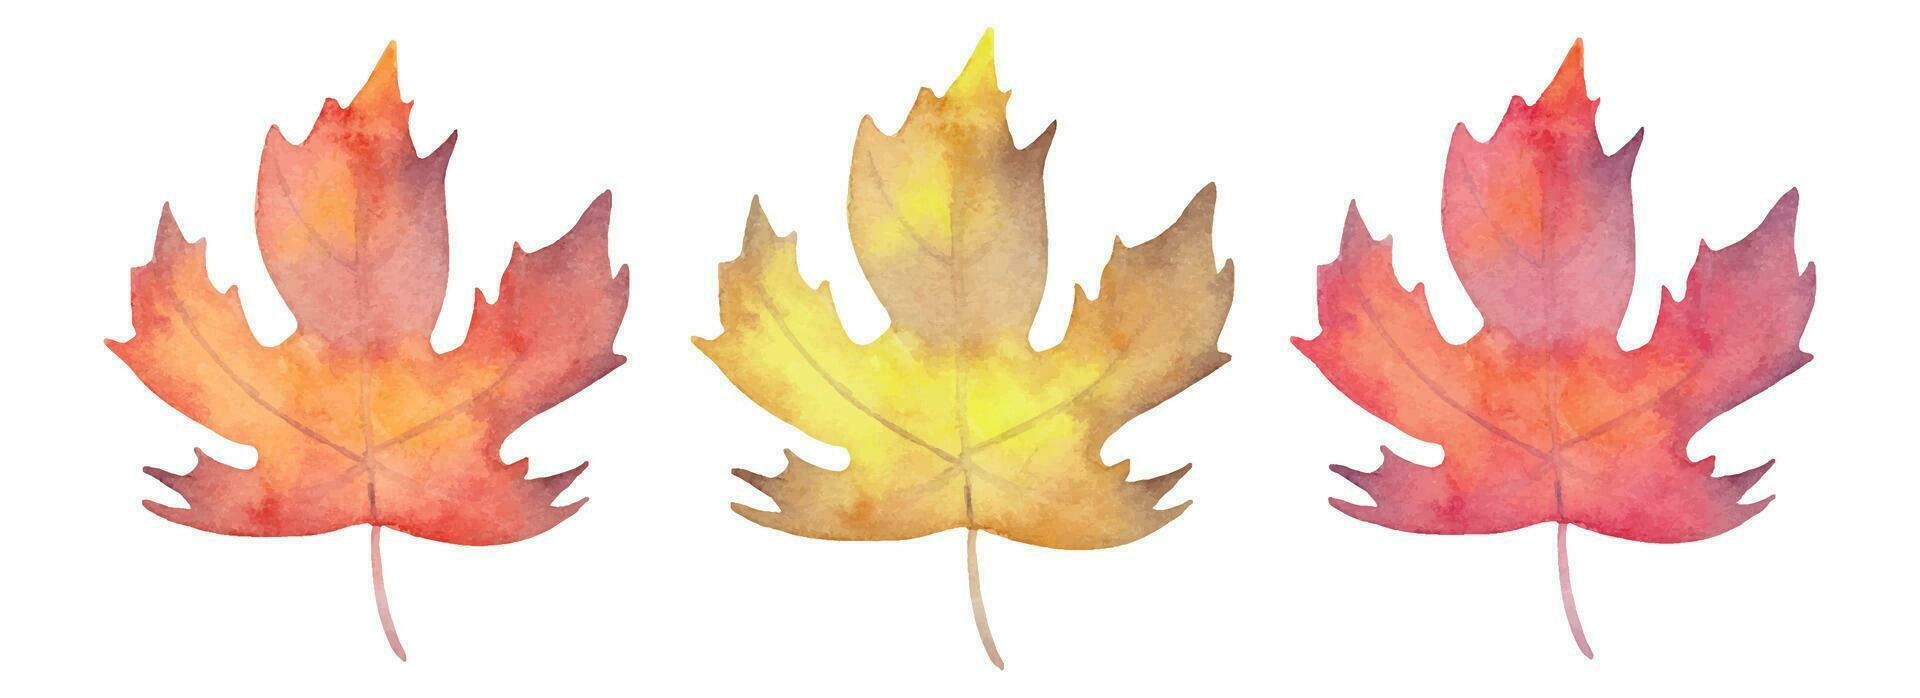 Sammlung von Aquarell Ahorn Blätter.Herbst Botanik zum saisonal Feiertage.Hand gezeichnet isoliert Kunst. vektor